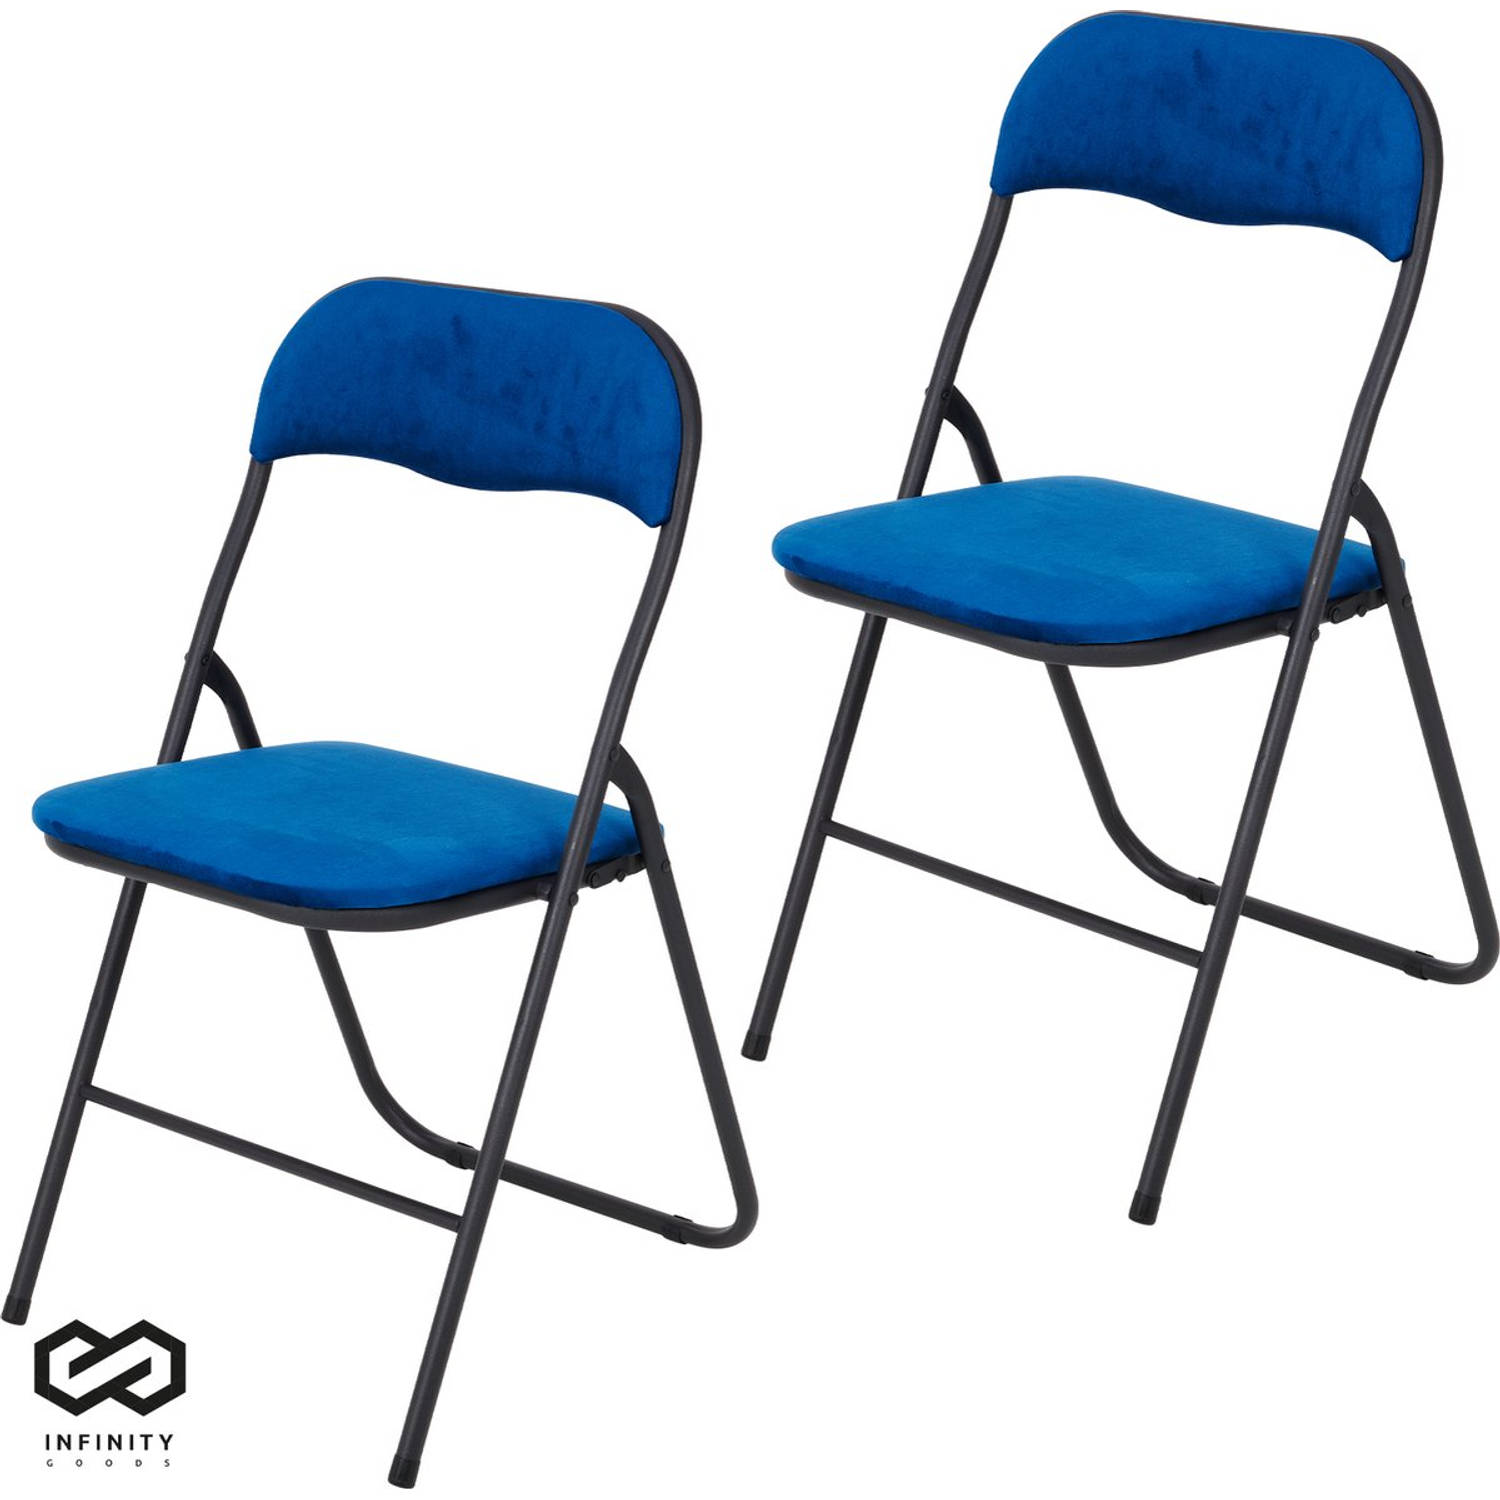 Infinity Goods Klapstoelen - Set van 2 - Vouwstoelen - Fluweel - Eettafelstoelen - Opklapbare Stoelen - 43 x 47 x 80 CM - Stoelen - Blauw